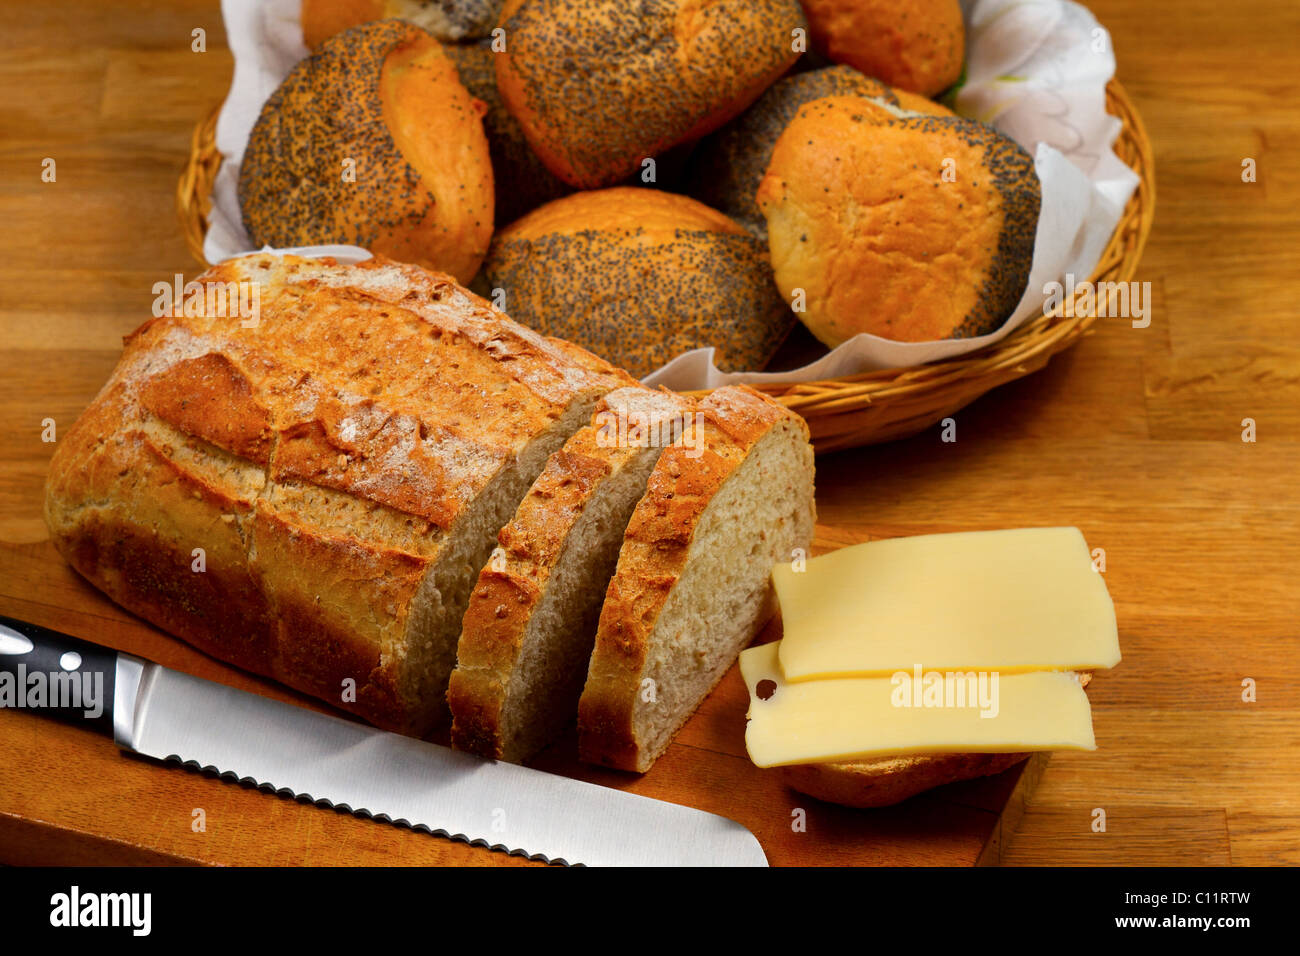 Pane fresco formaggio e il coltello sul tagliere di legno con cesto con pane in background Foto Stock